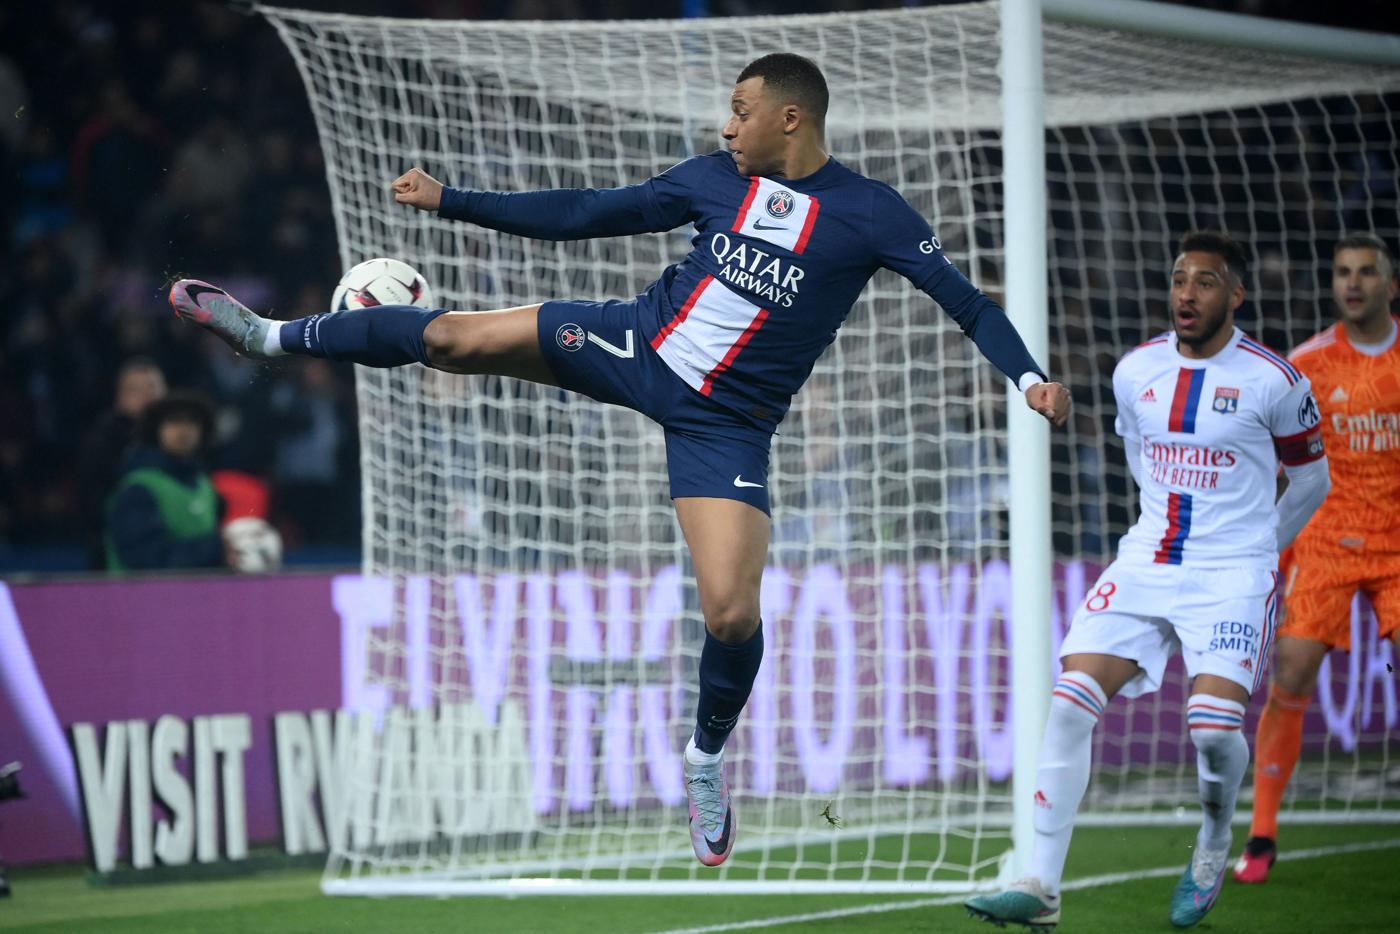 PSG - Lyon - 0:1. Mistrzostwa Francji, 29. runda. Przegląd meczu, statystyki